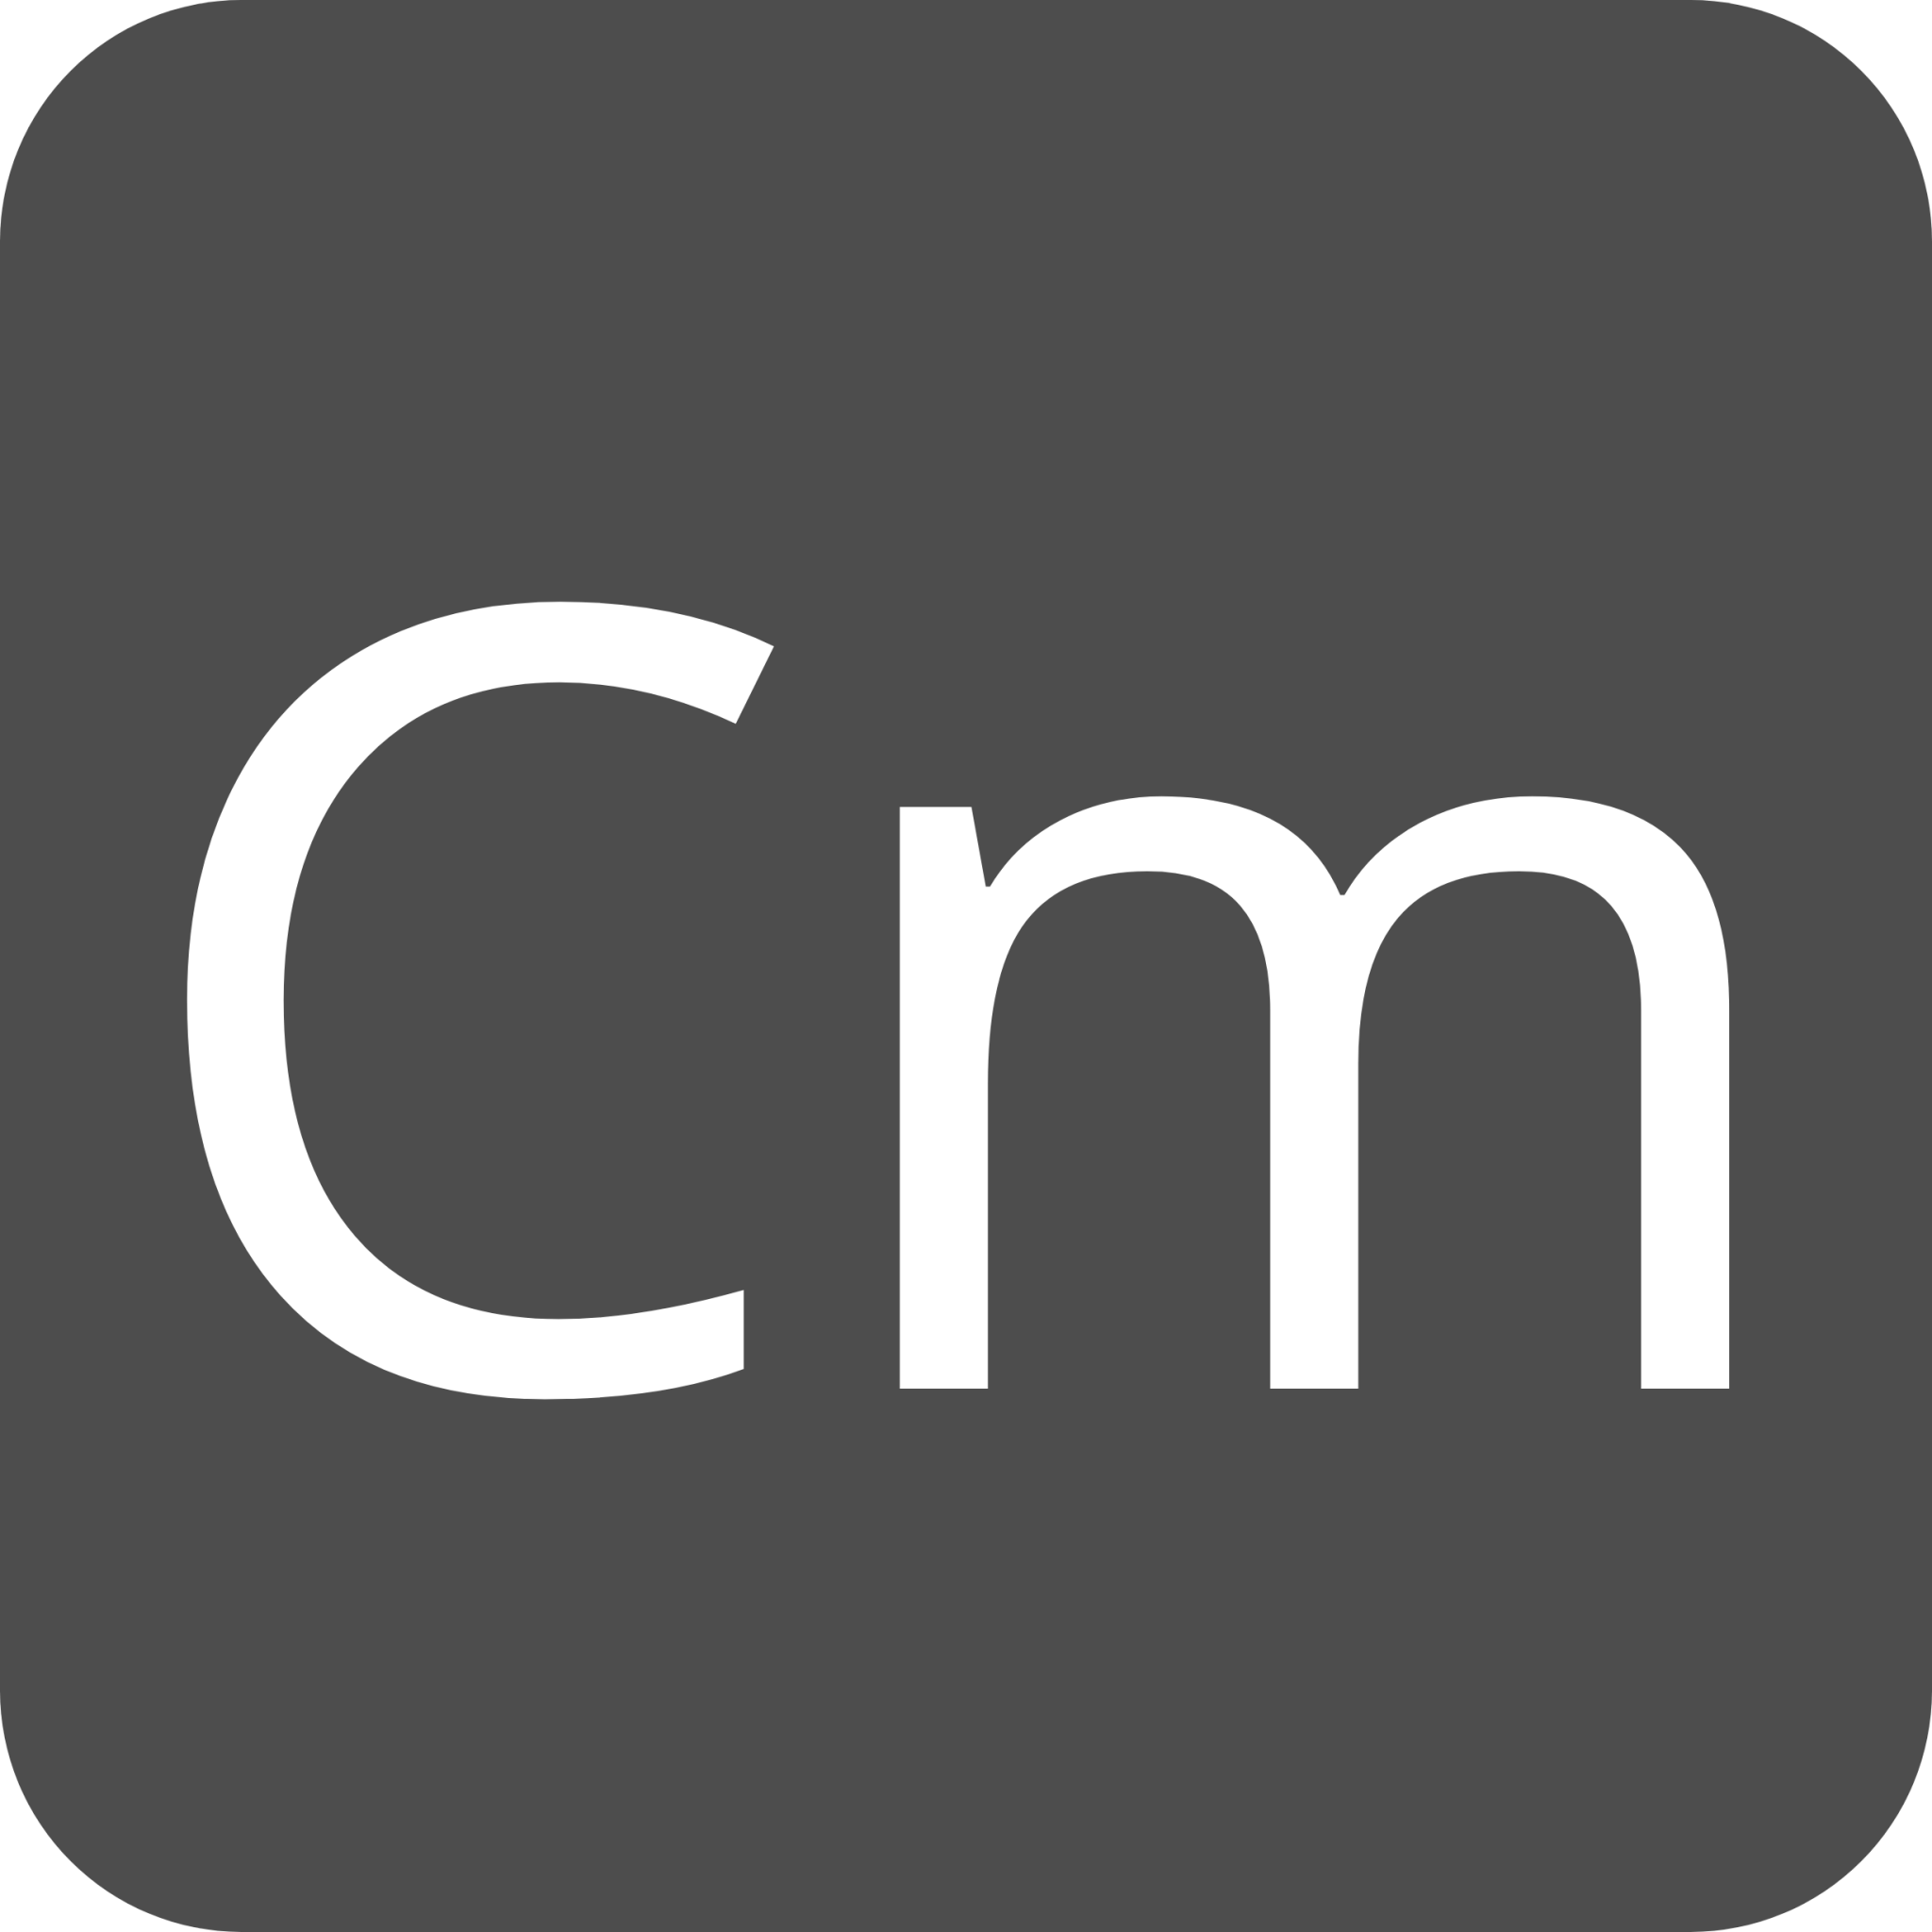 indicator keyboard Cm icon